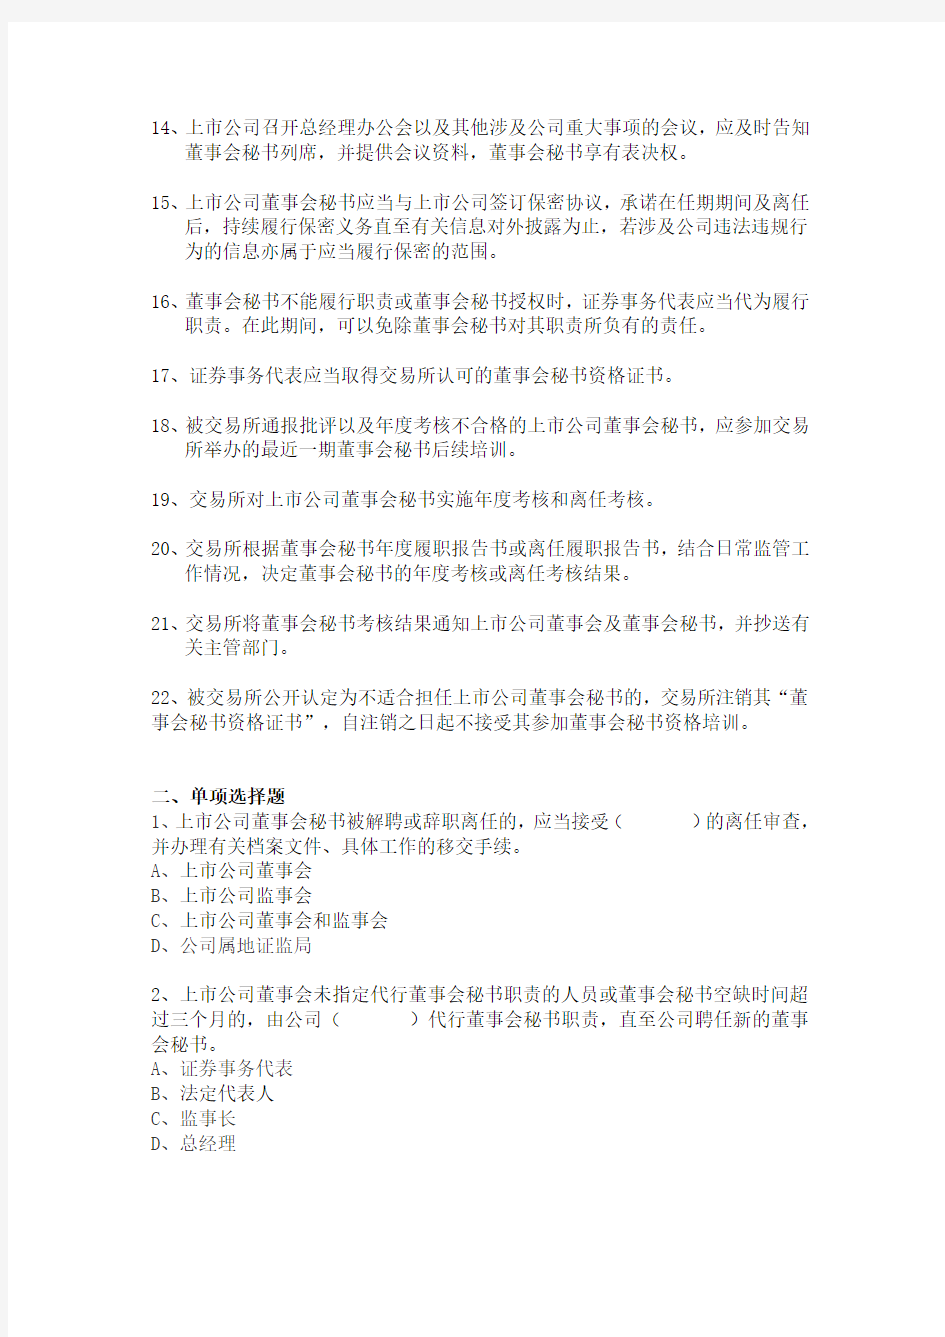 70-关于发布《上海证券交易所上市公司董事会秘书管理办法》(修订)的通知参考试题